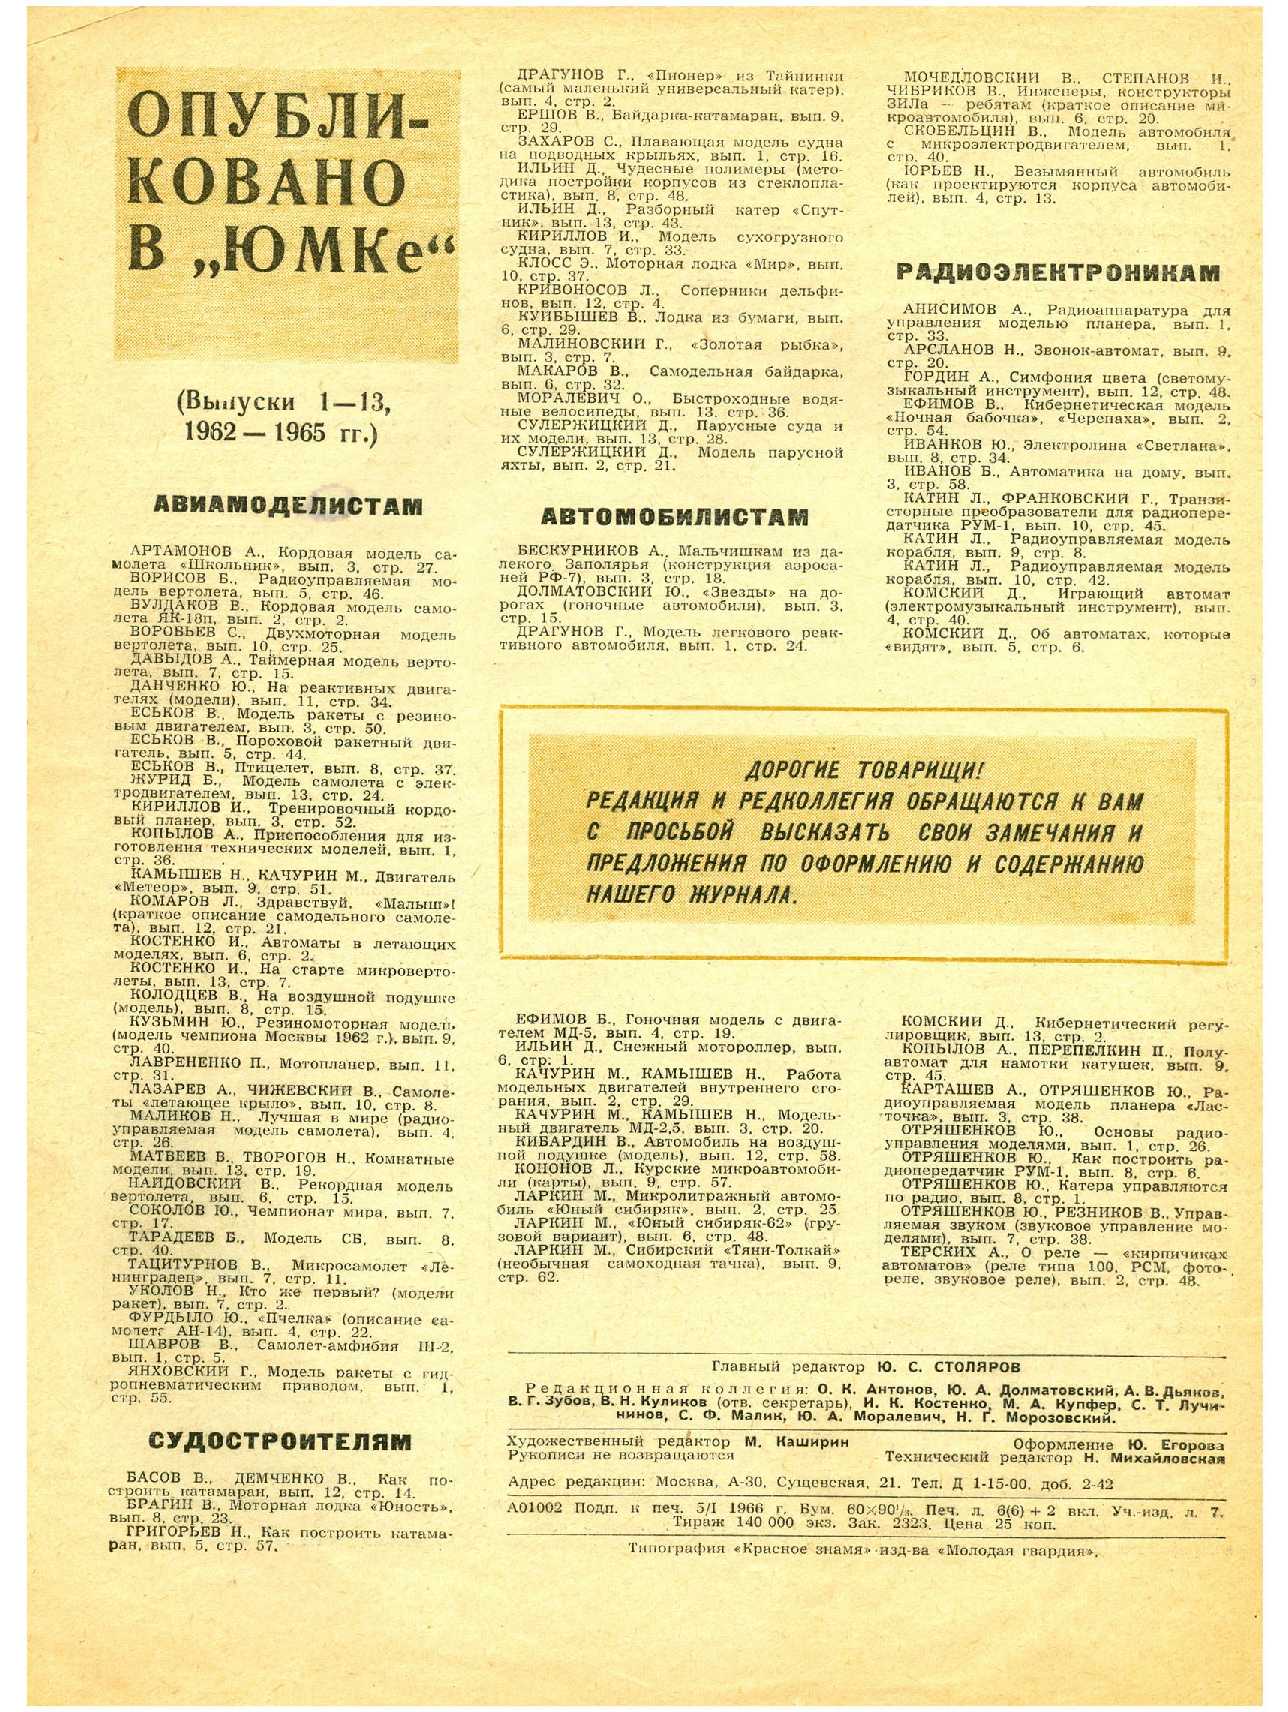 МК 1, 1966, 48 c.